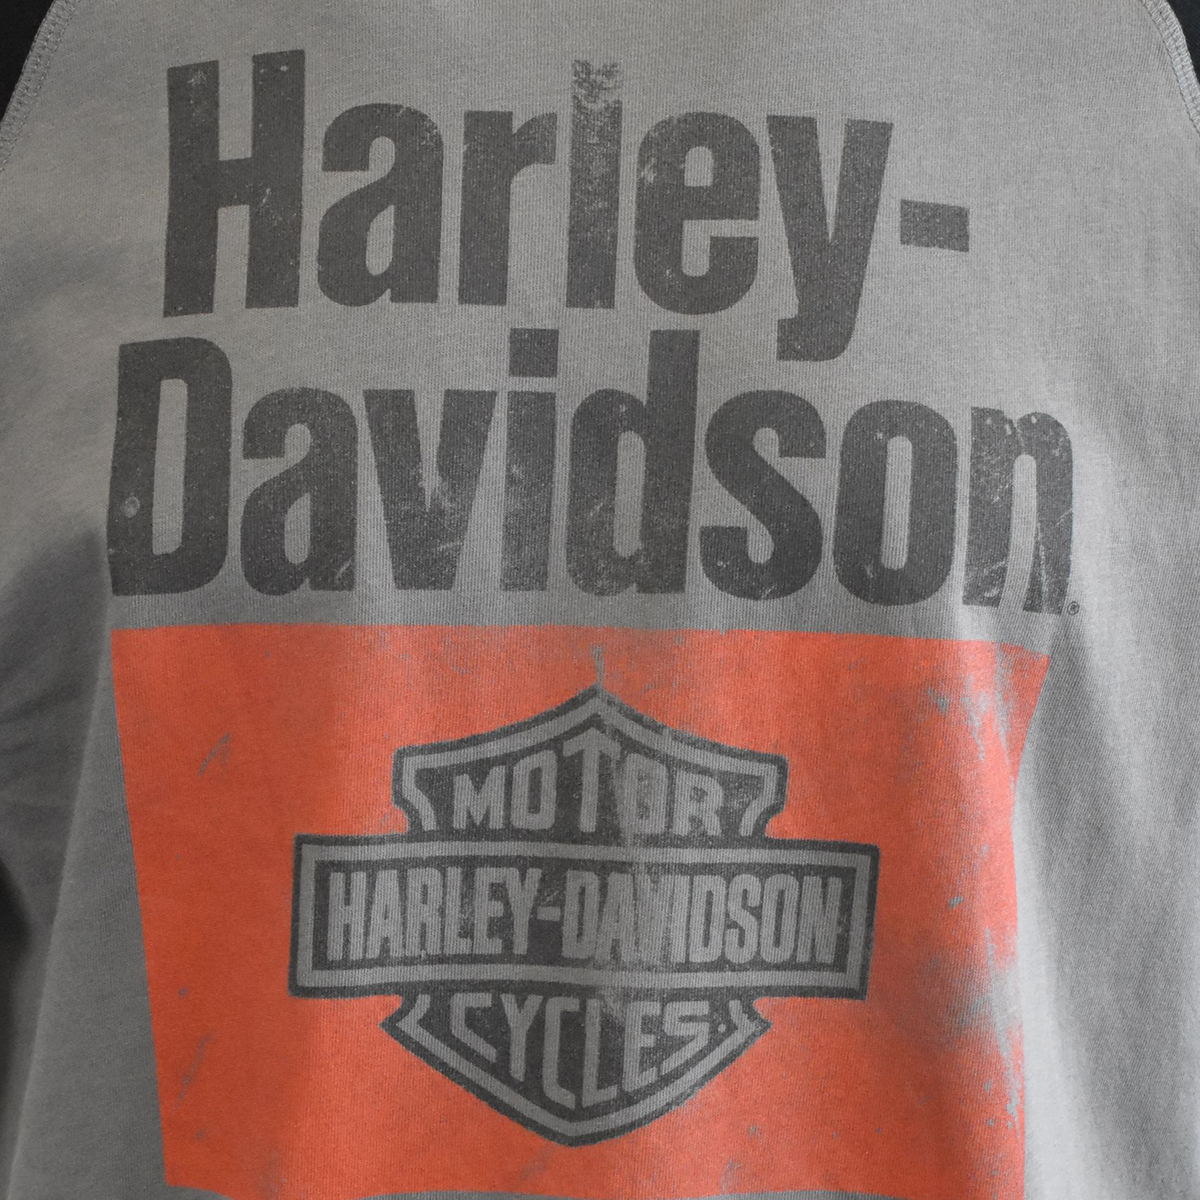 Harley-Davidson Men's T-Shirt Colorblock Arial Print Raglan (S79)